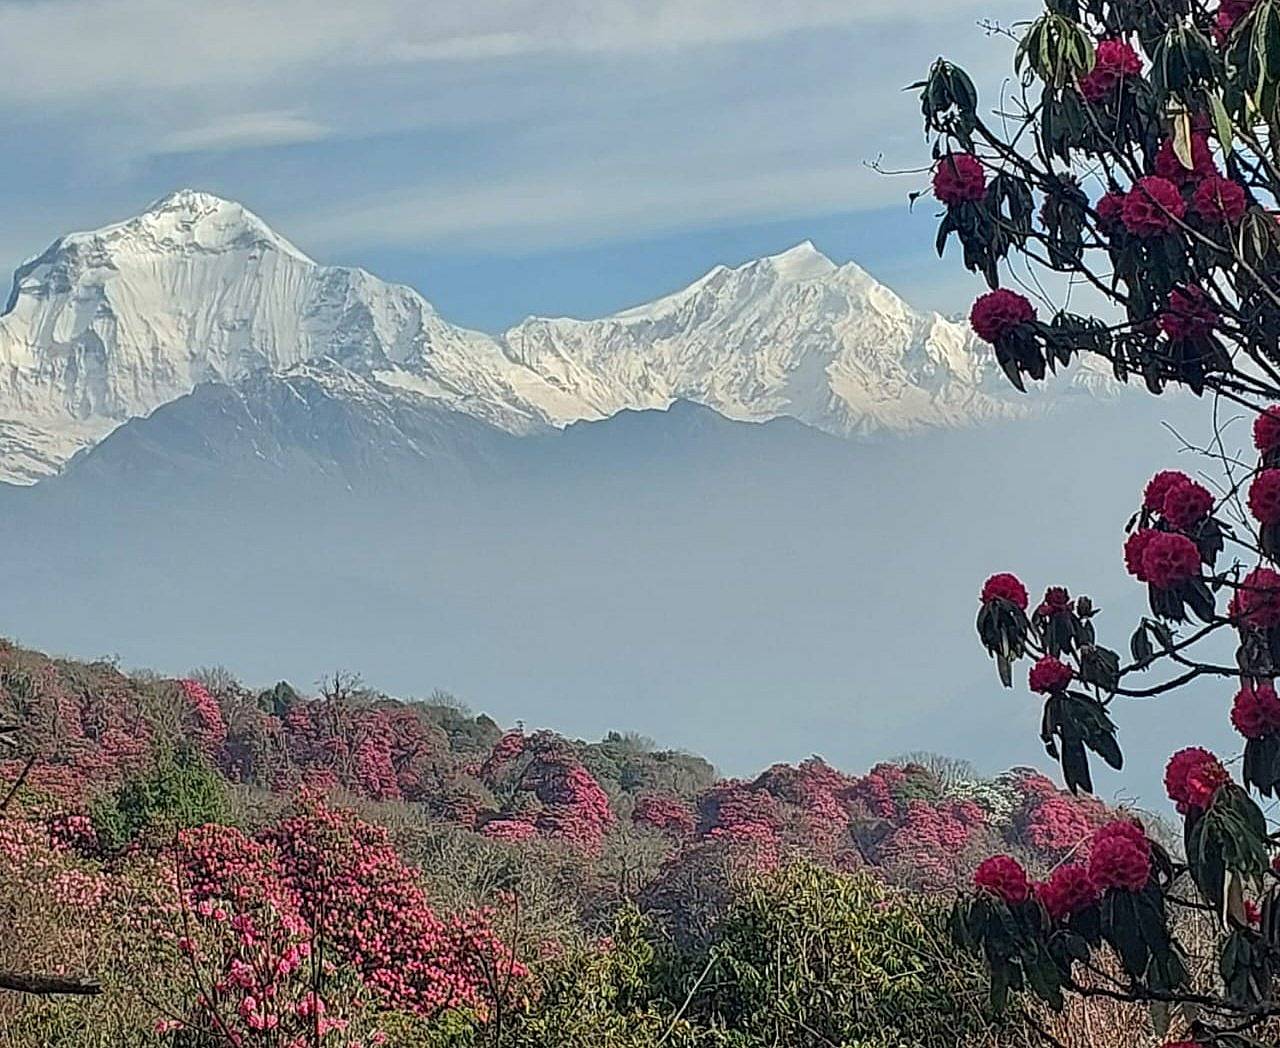 La meraviglia nascosta - Trekking equo nell'Annapurna.